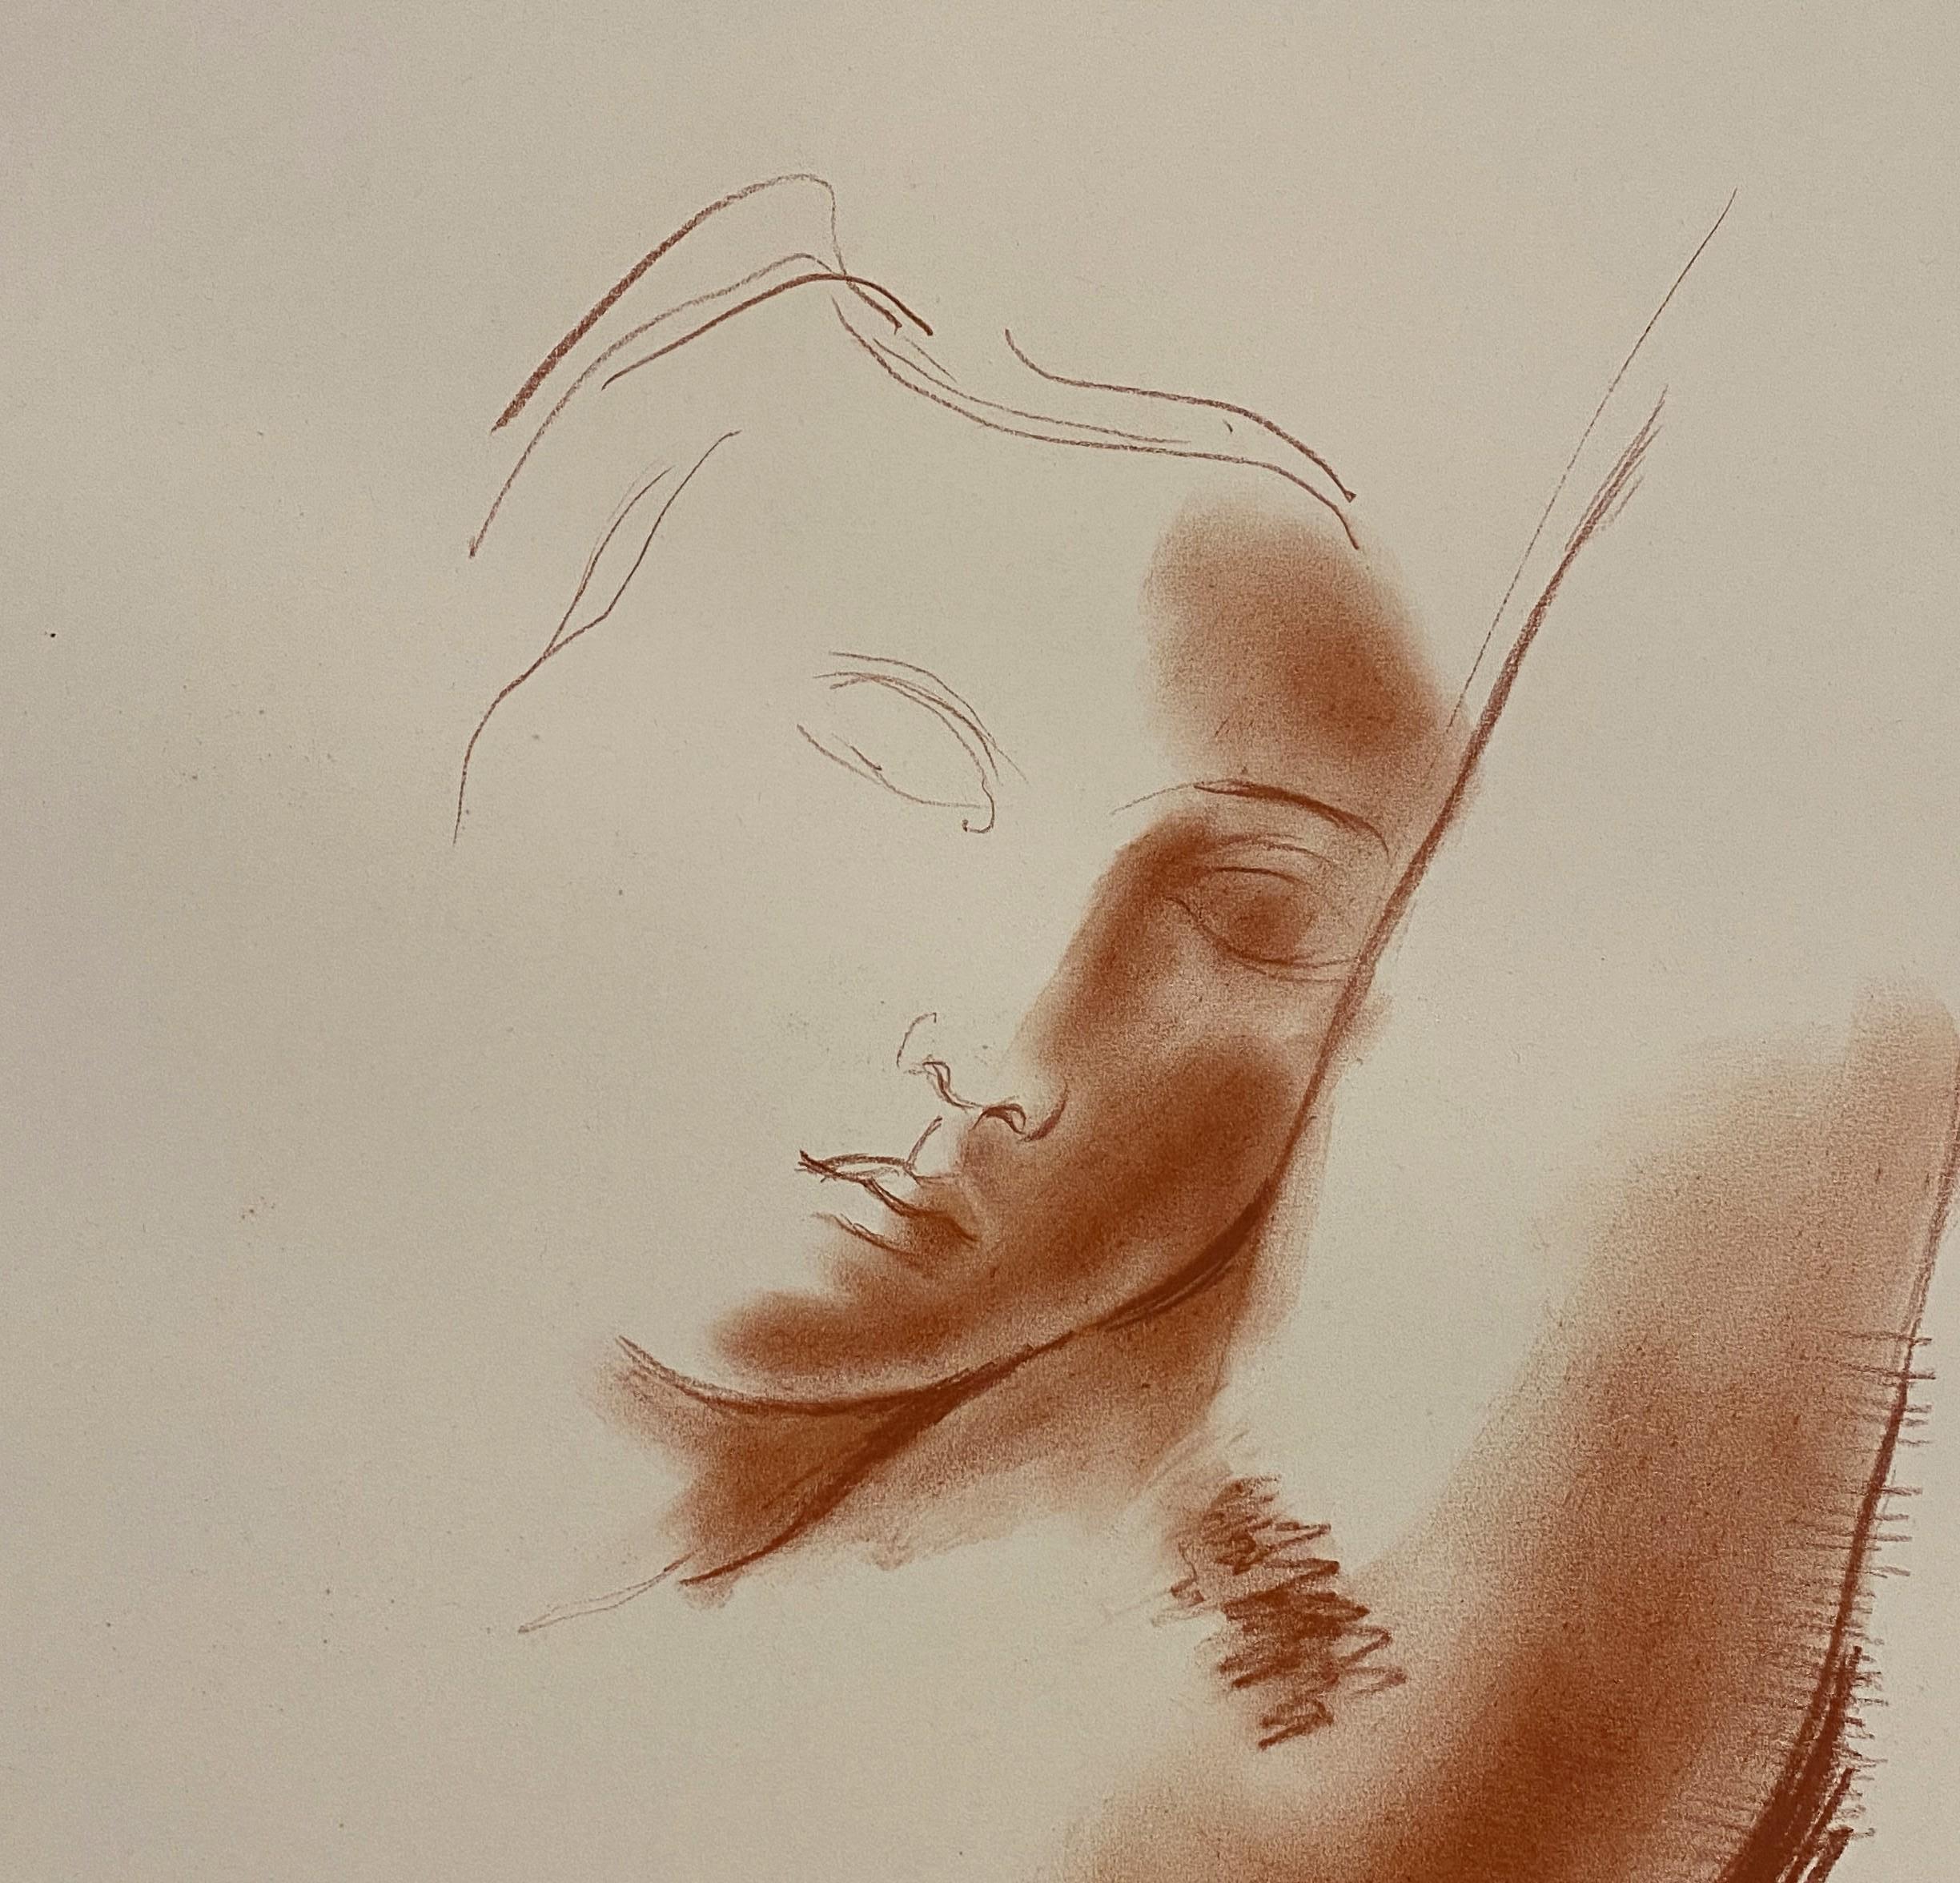 Antoniucci VOLTI
Porträt einer Frau 

Originalzeichnung in Sanguiné (Holzkohle)
Signiert unten links
Auf Papier und Karton, Format 64,5 x 50 cm (26 x 20 inch)

Guter Zustand, ein kleiner Einriss am linken Rand (siehe Bild)